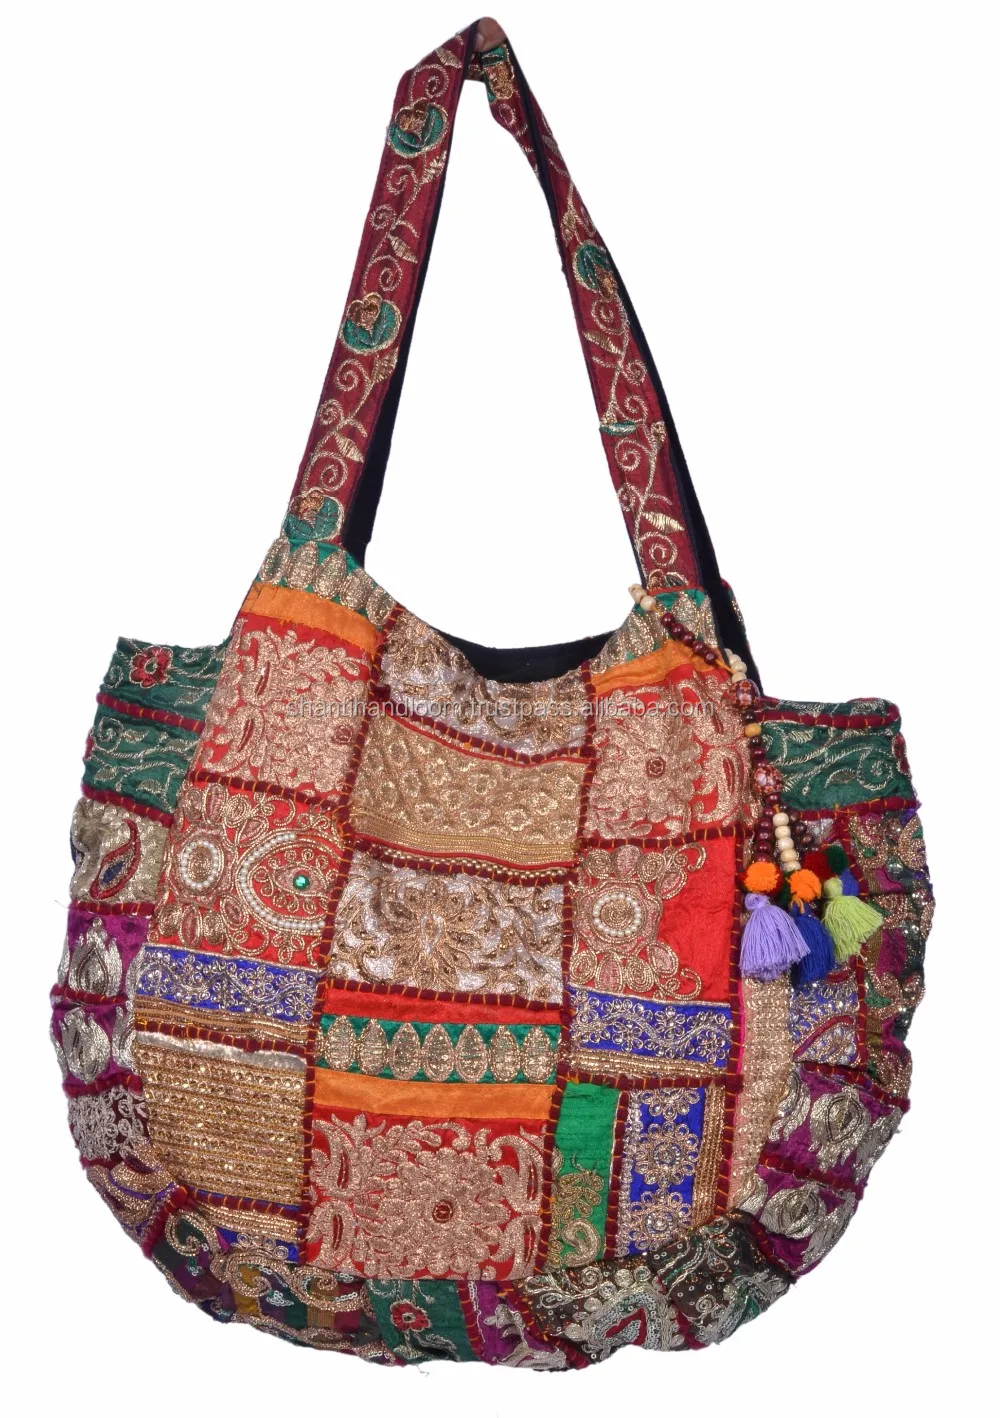 Gujarati Embroidered Fancy Banjara Bags - Buy Gujarati Embroidered ...